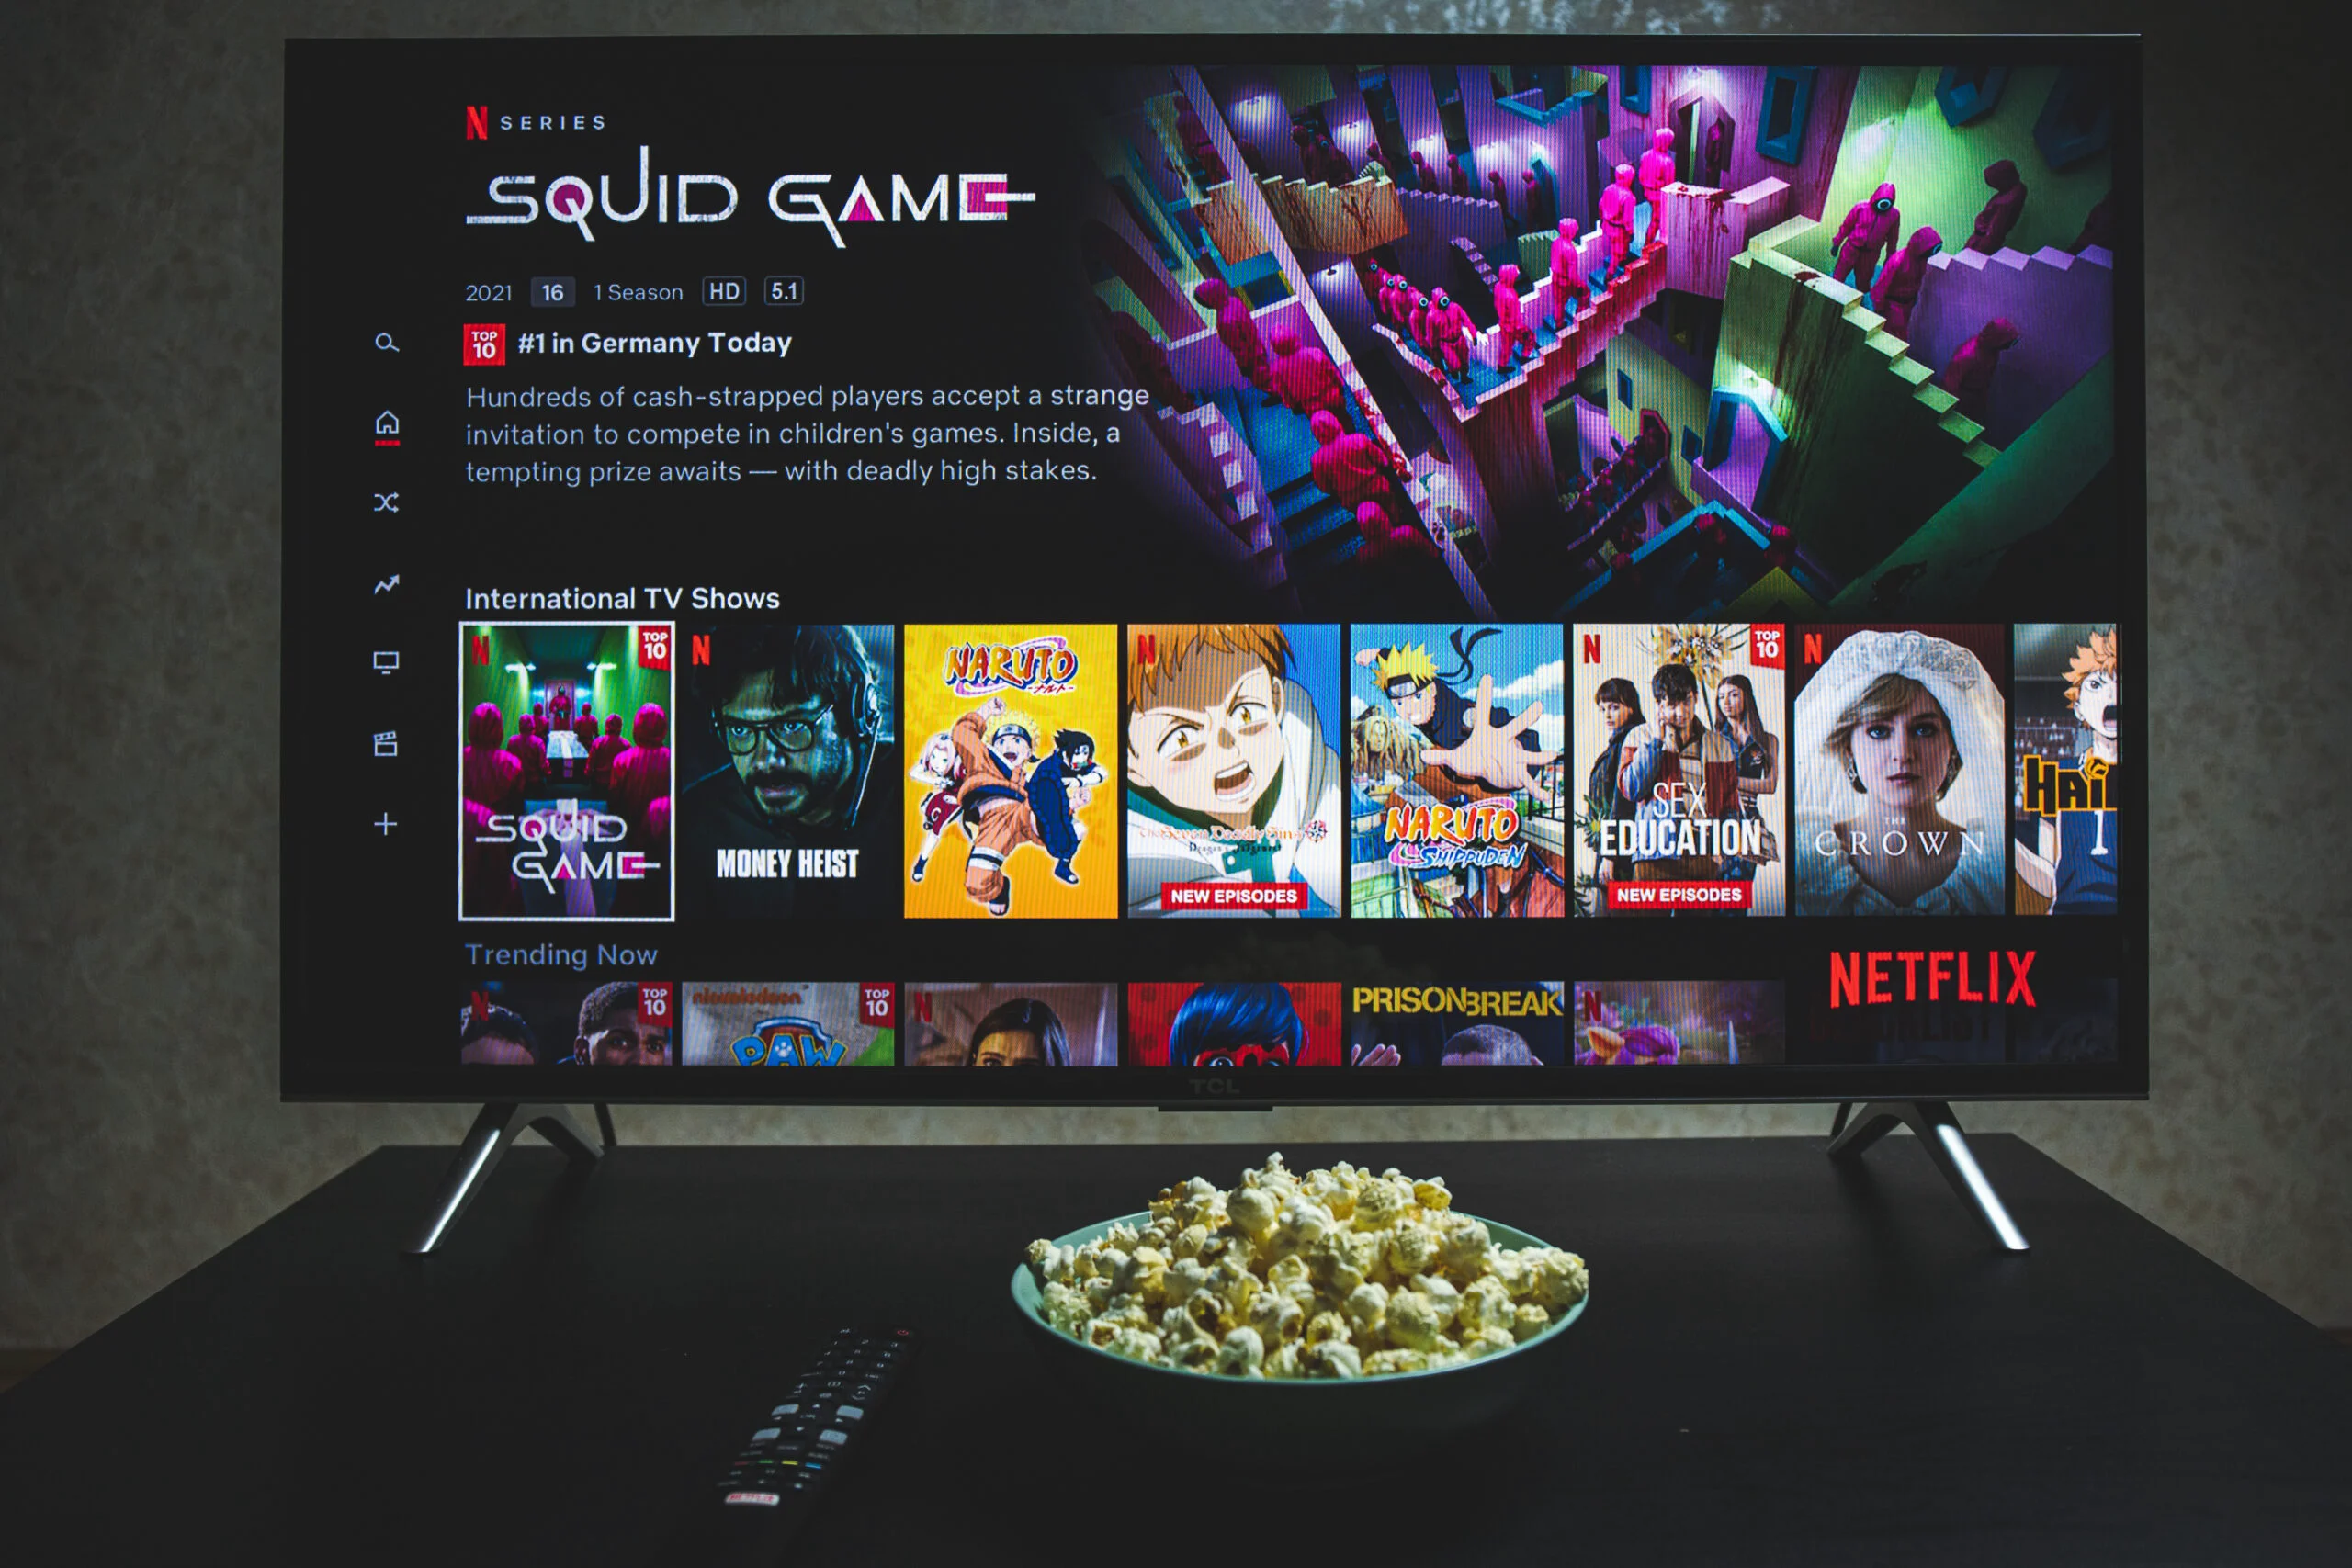 Televizor comutat pe Netflix, ce arată serialul „Squid Game” ca fiind nr.1 în topul celor mai vizionate seriale ale rețelei în Germania